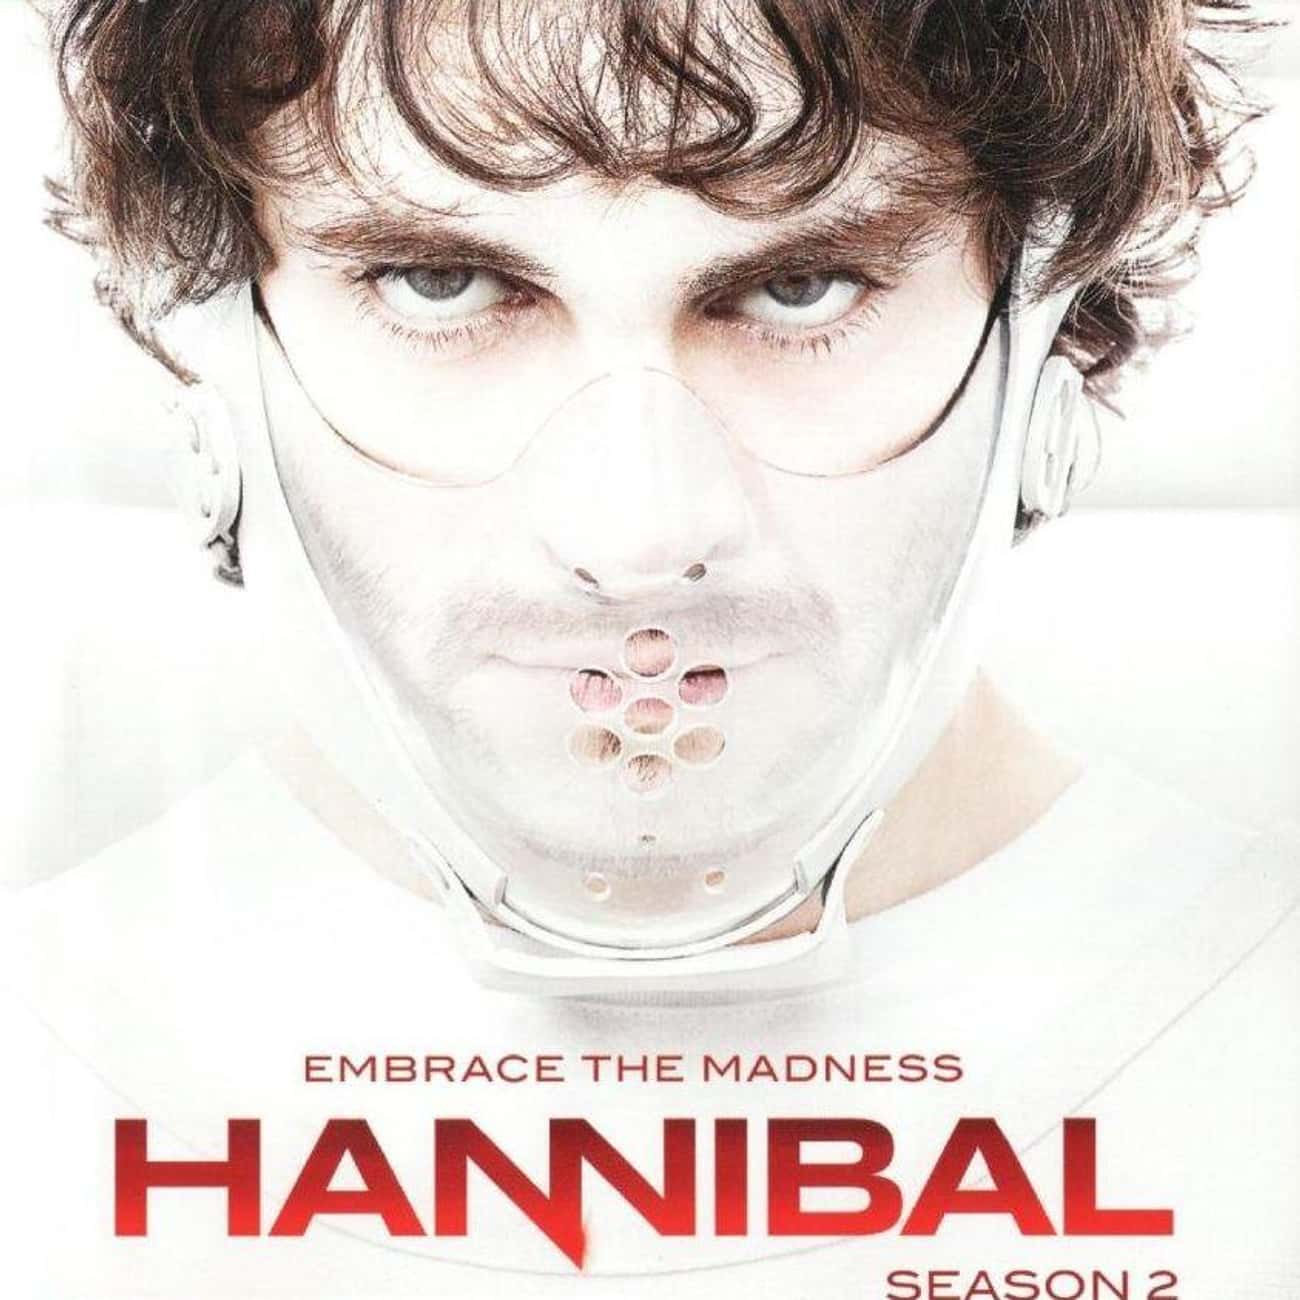 Hannibal - Season 2